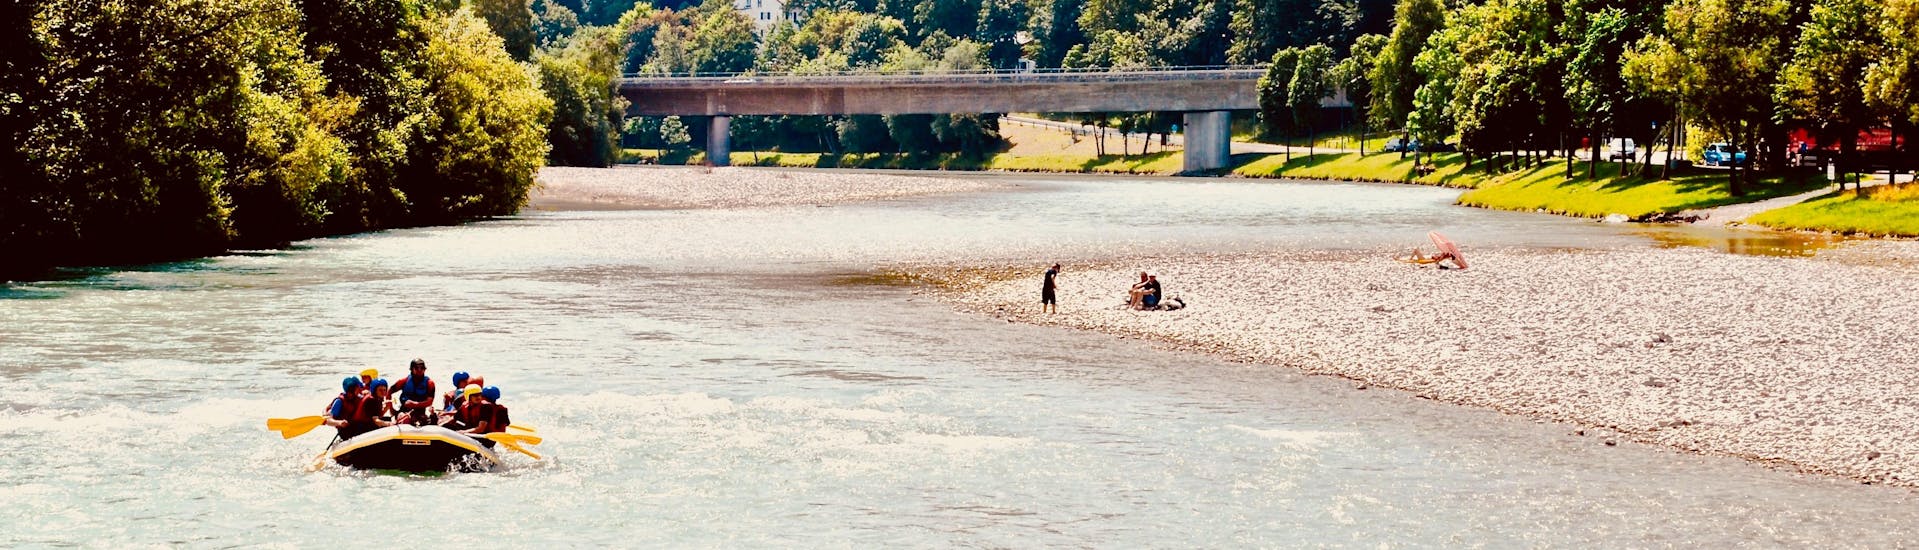 Rivière à Bad Tolz lors d'une activité de rafting en Allemagne.